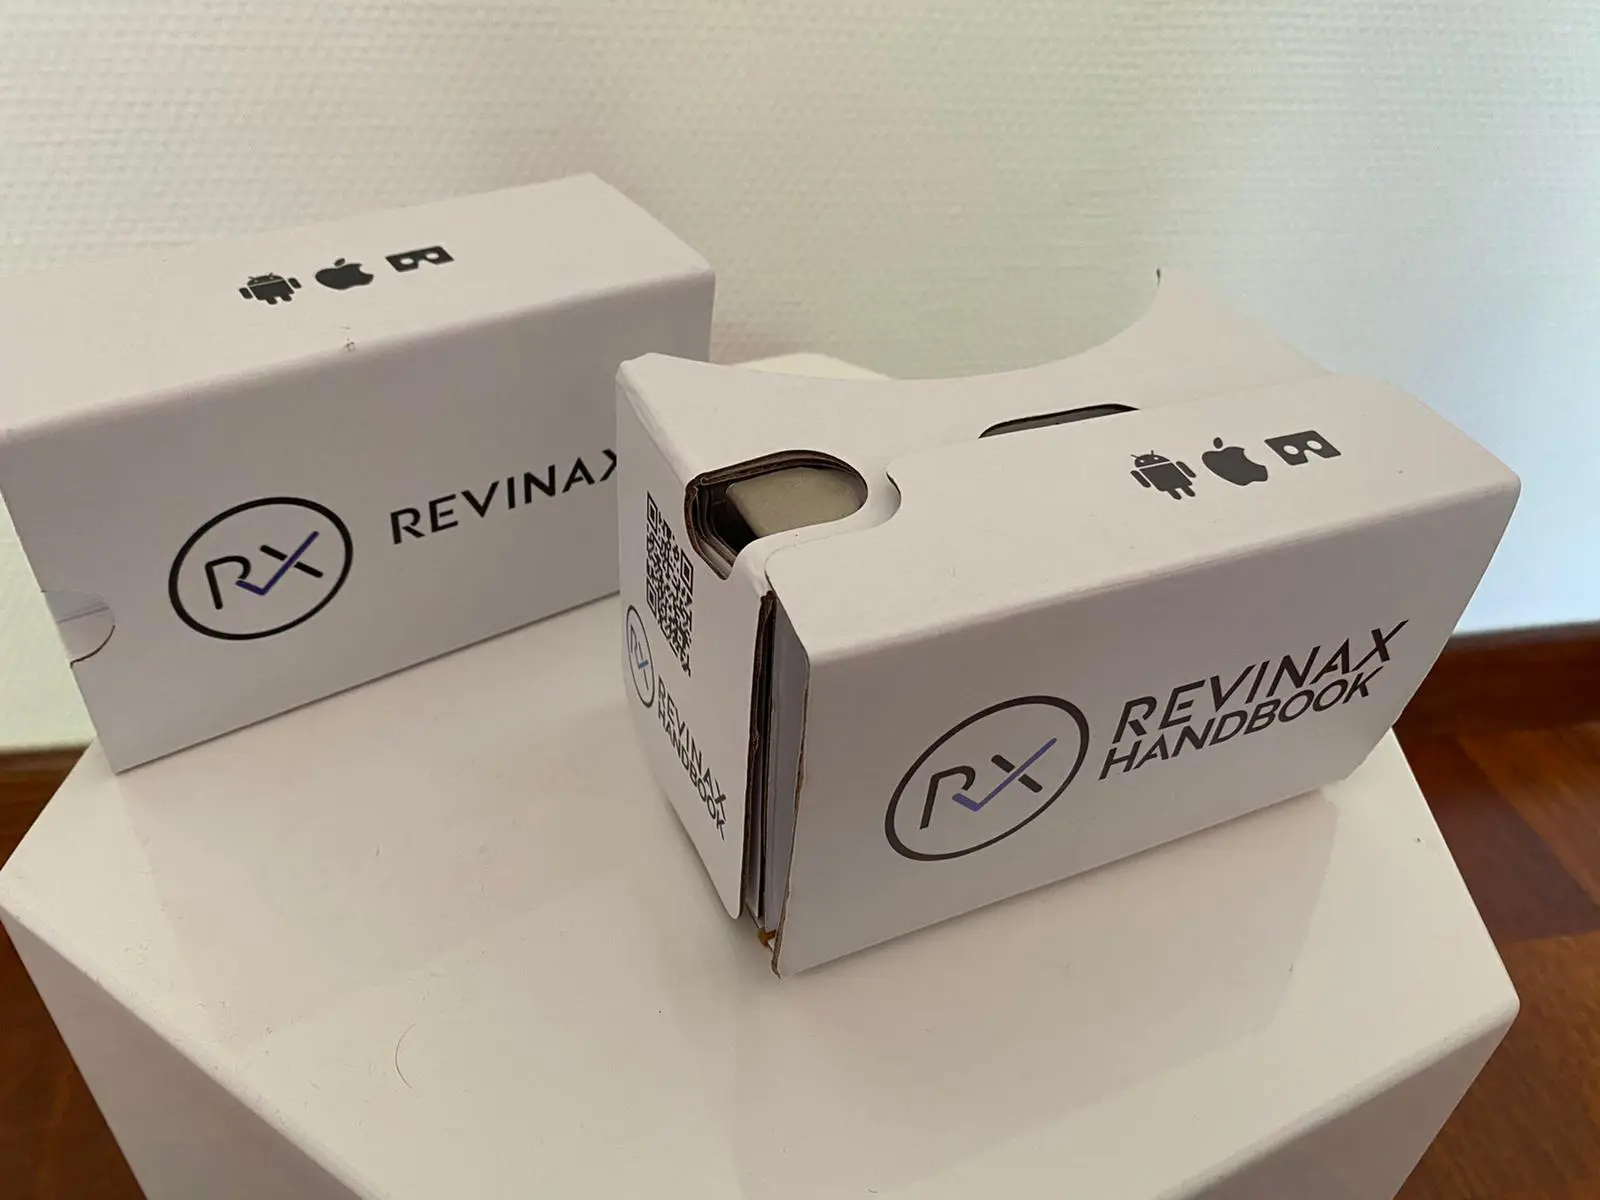 Le cardboard Revinax une fois monté est un casque VR écologique